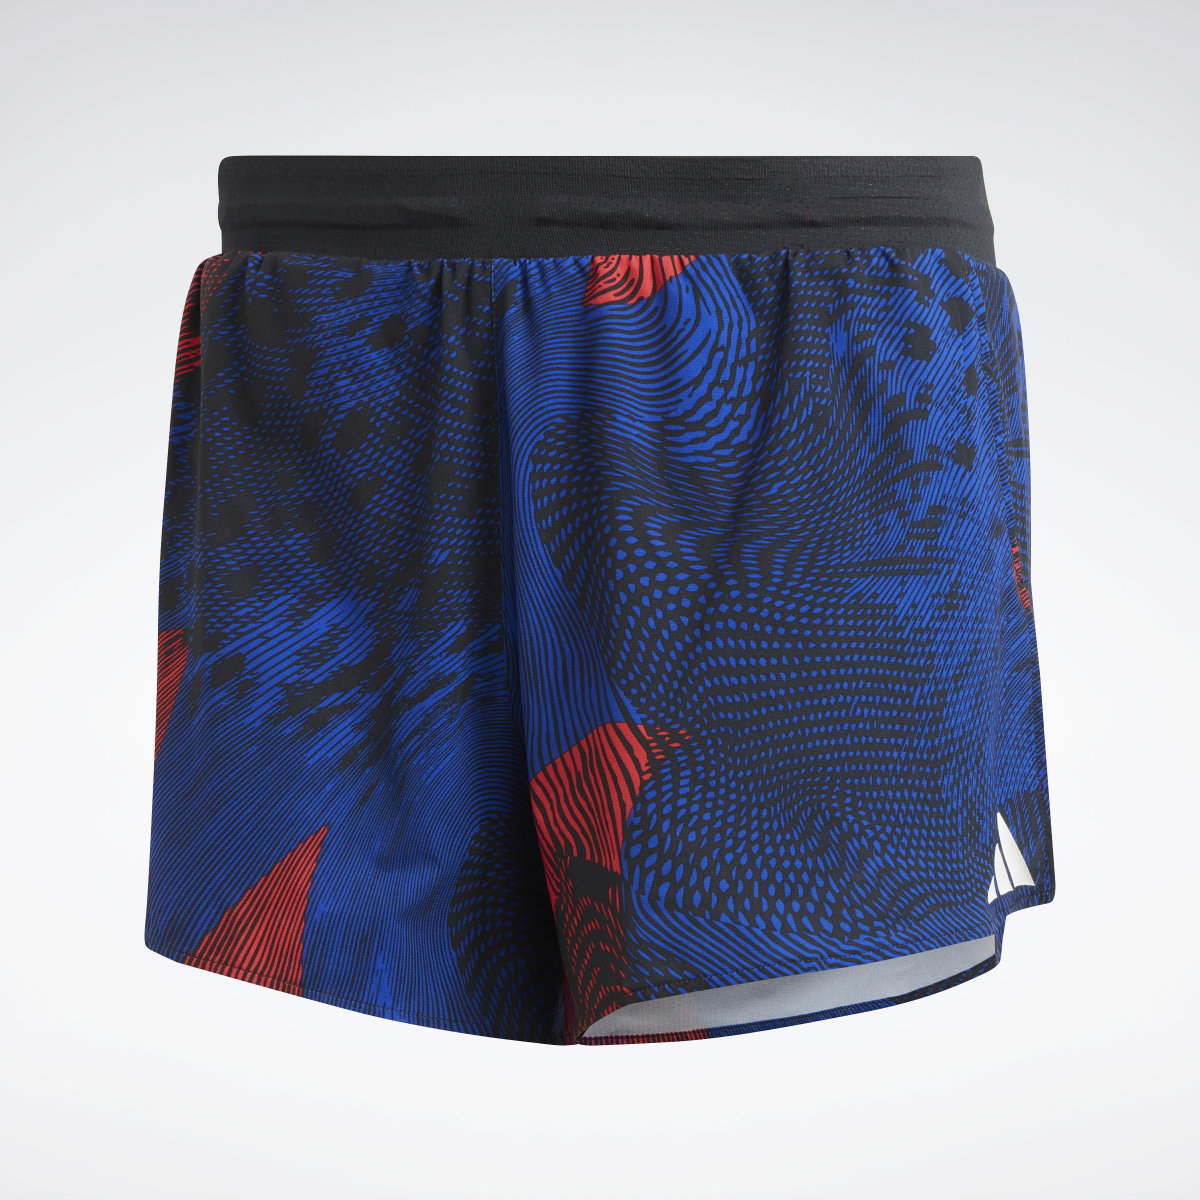 Adidas Adizero Split Shorts. 4